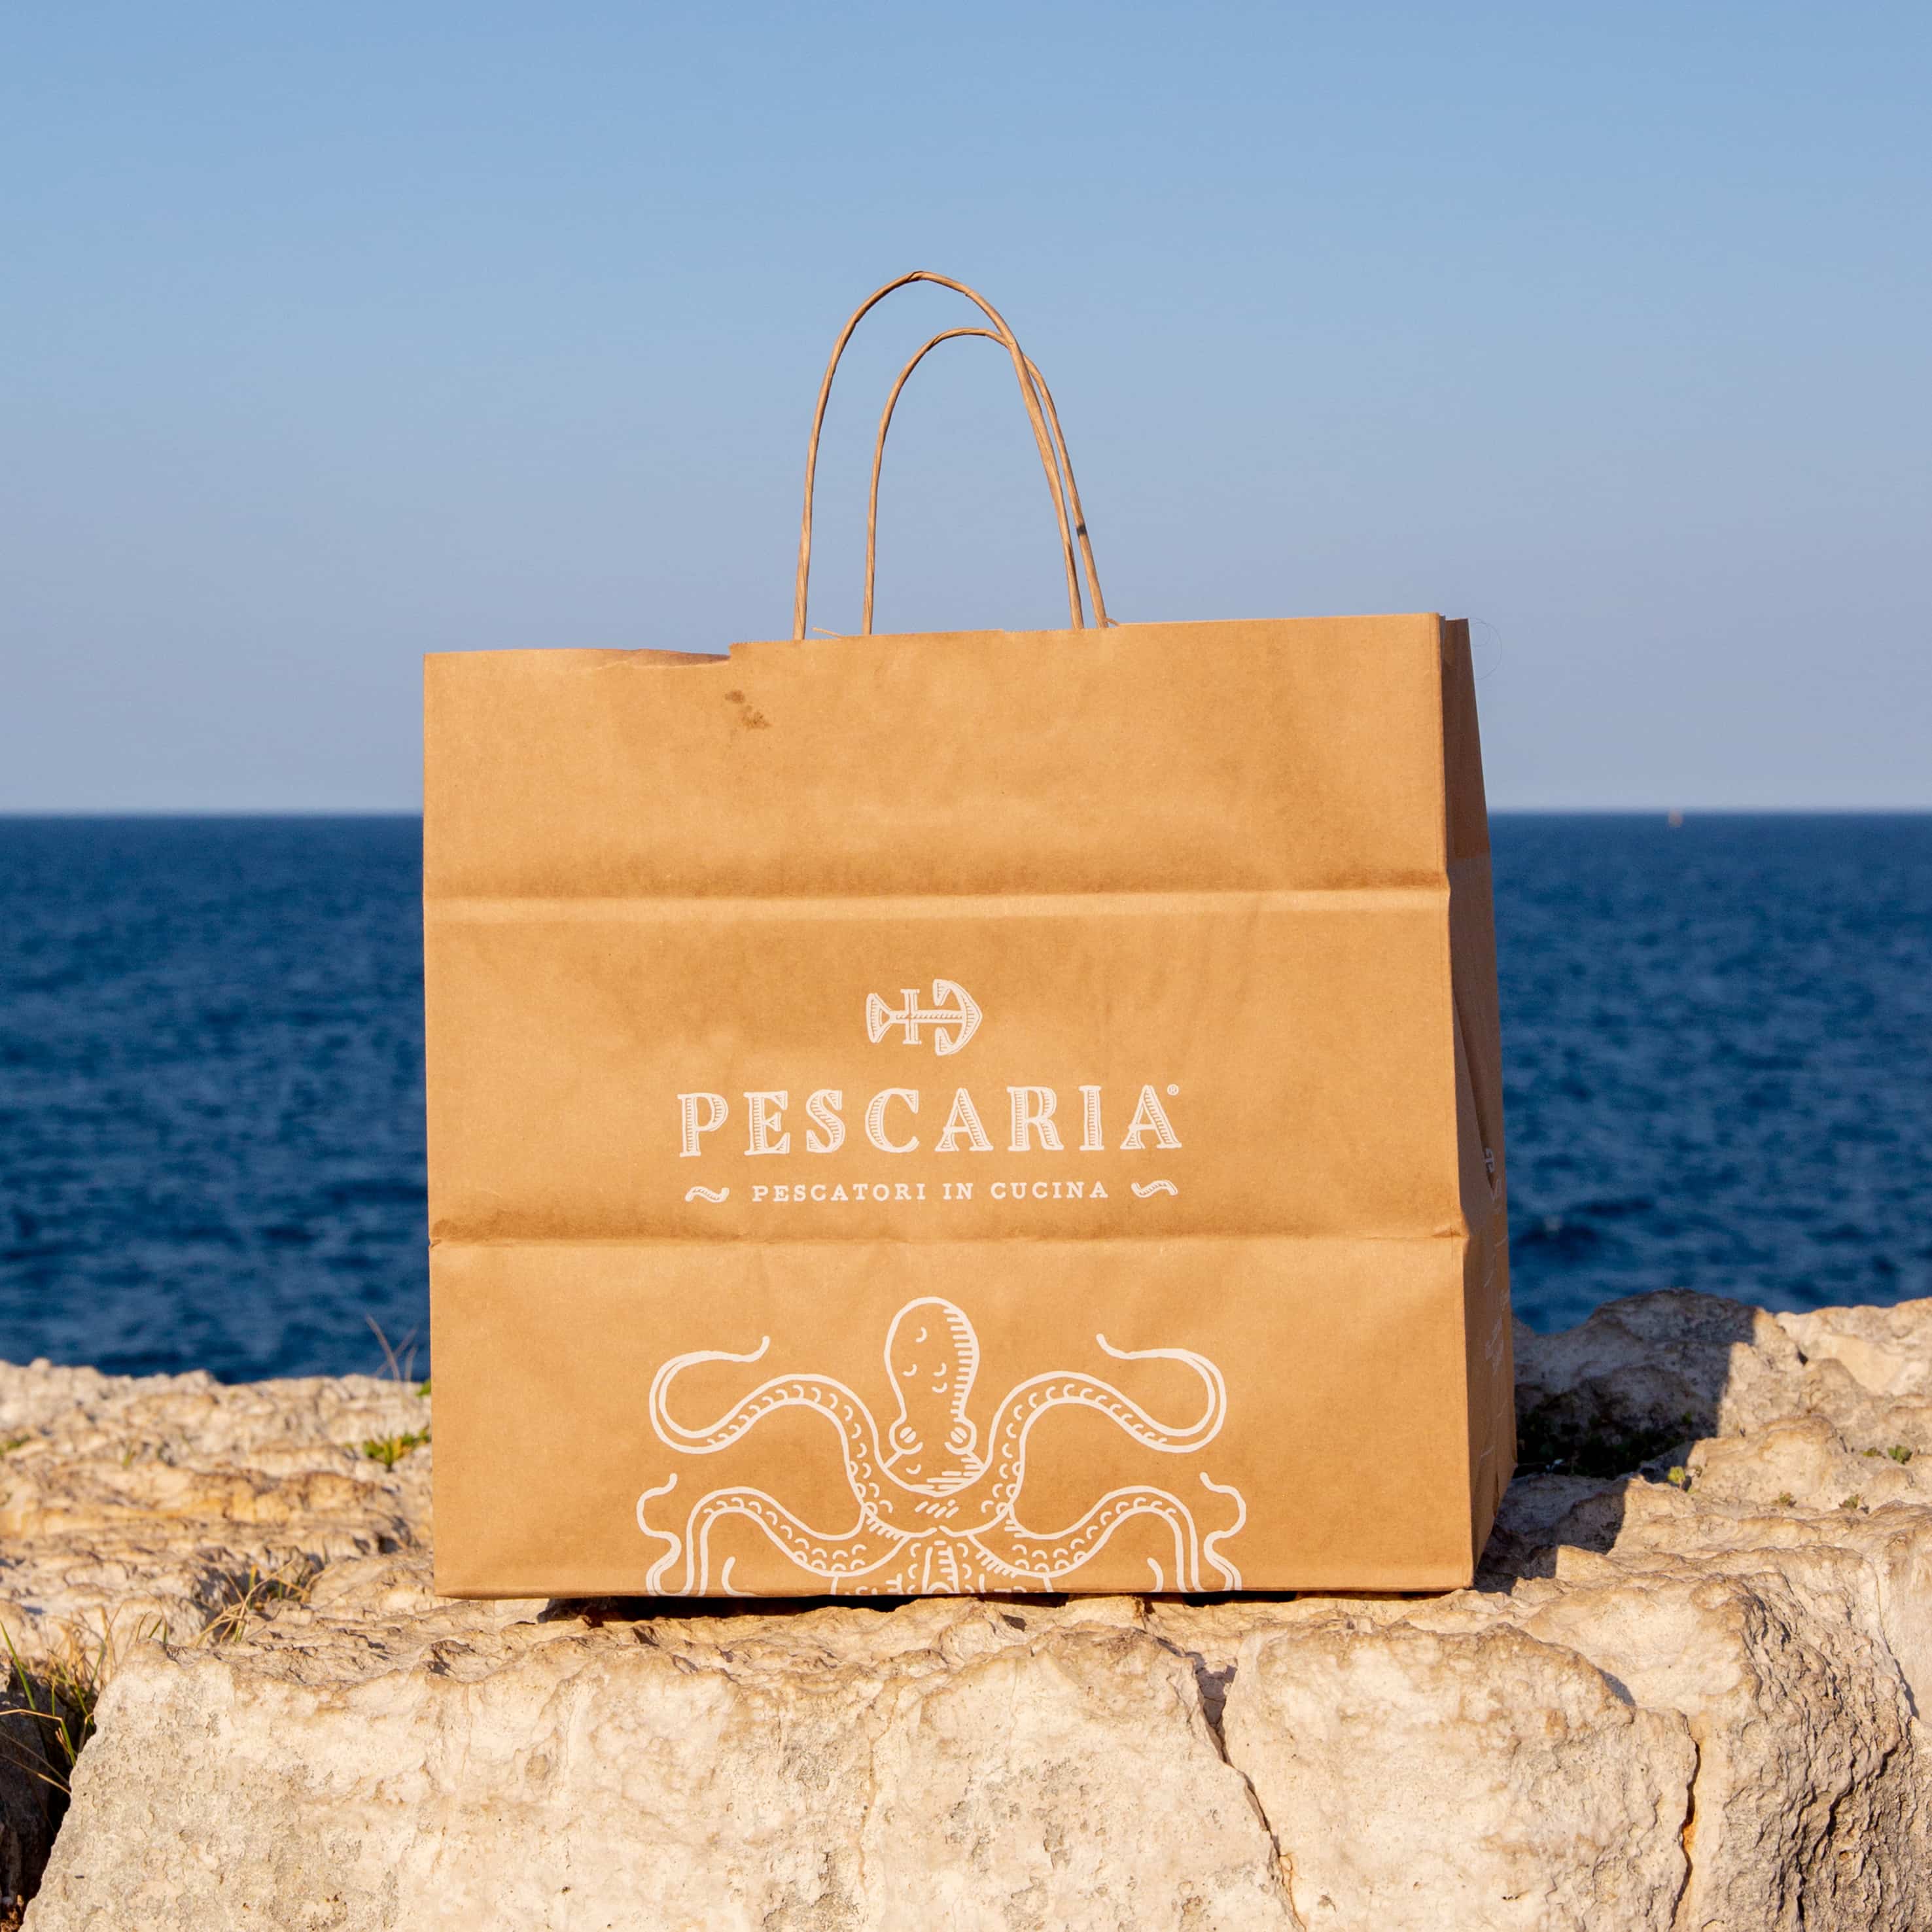 Pescaria delivery plastic free